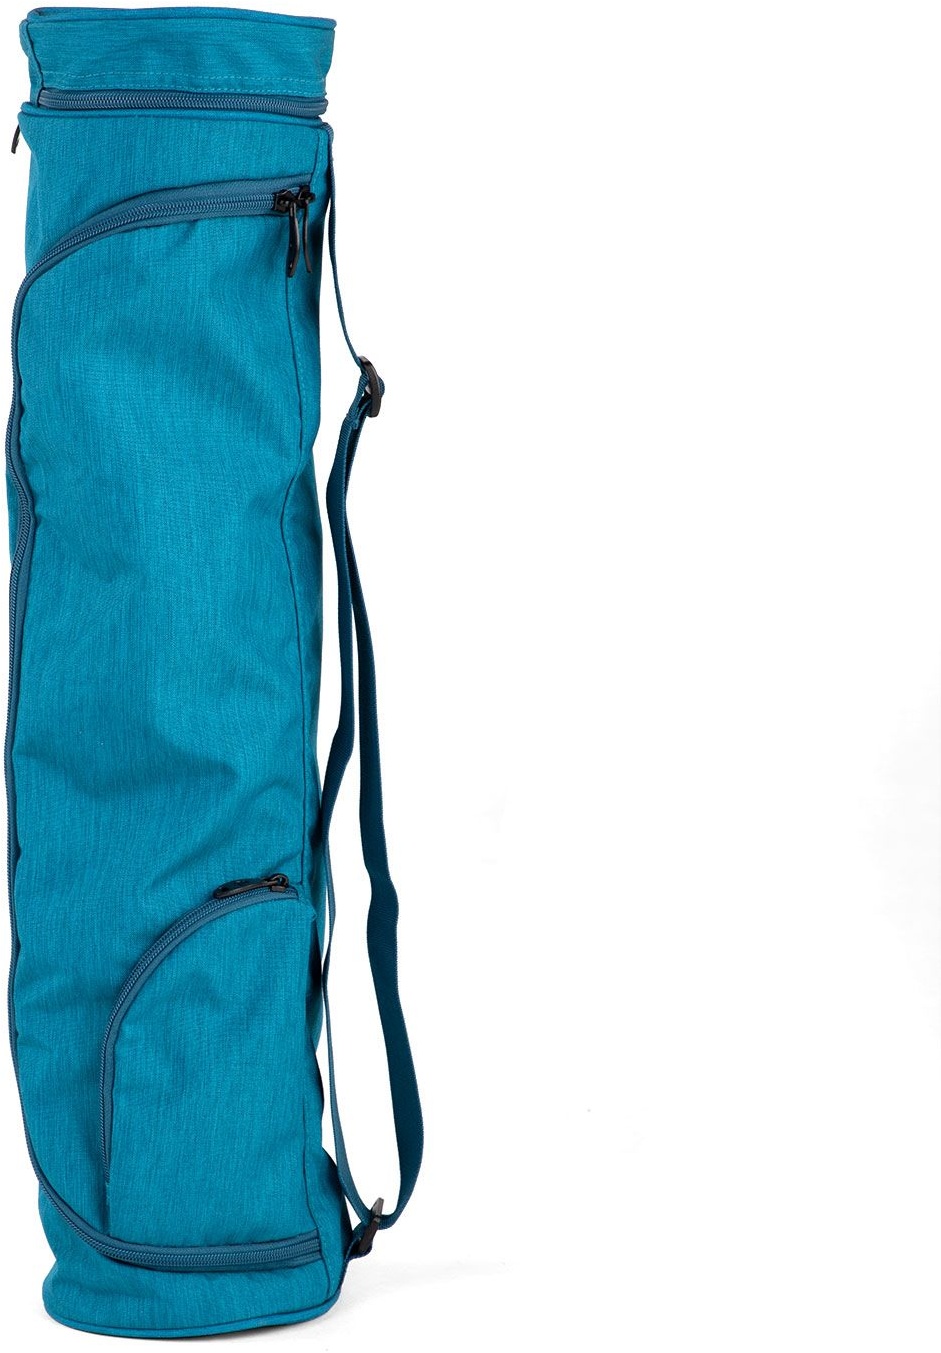 Yogamatten Tasche Asana Bag 60 petrol meliert, Polyester/Polyamide bestickt 1 St